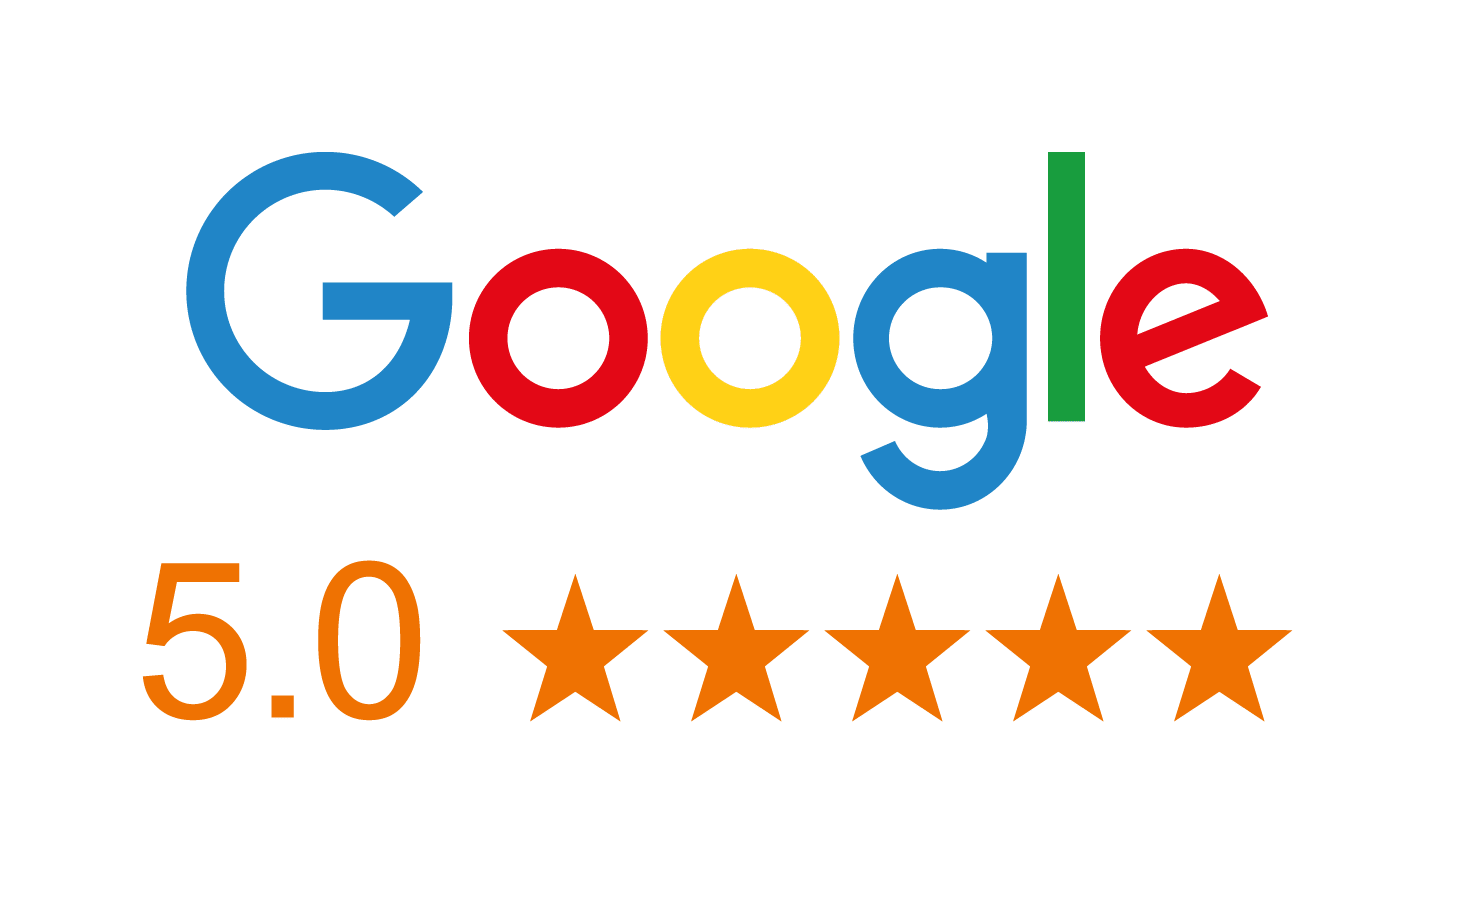 5 Star Rating - Google Reviews